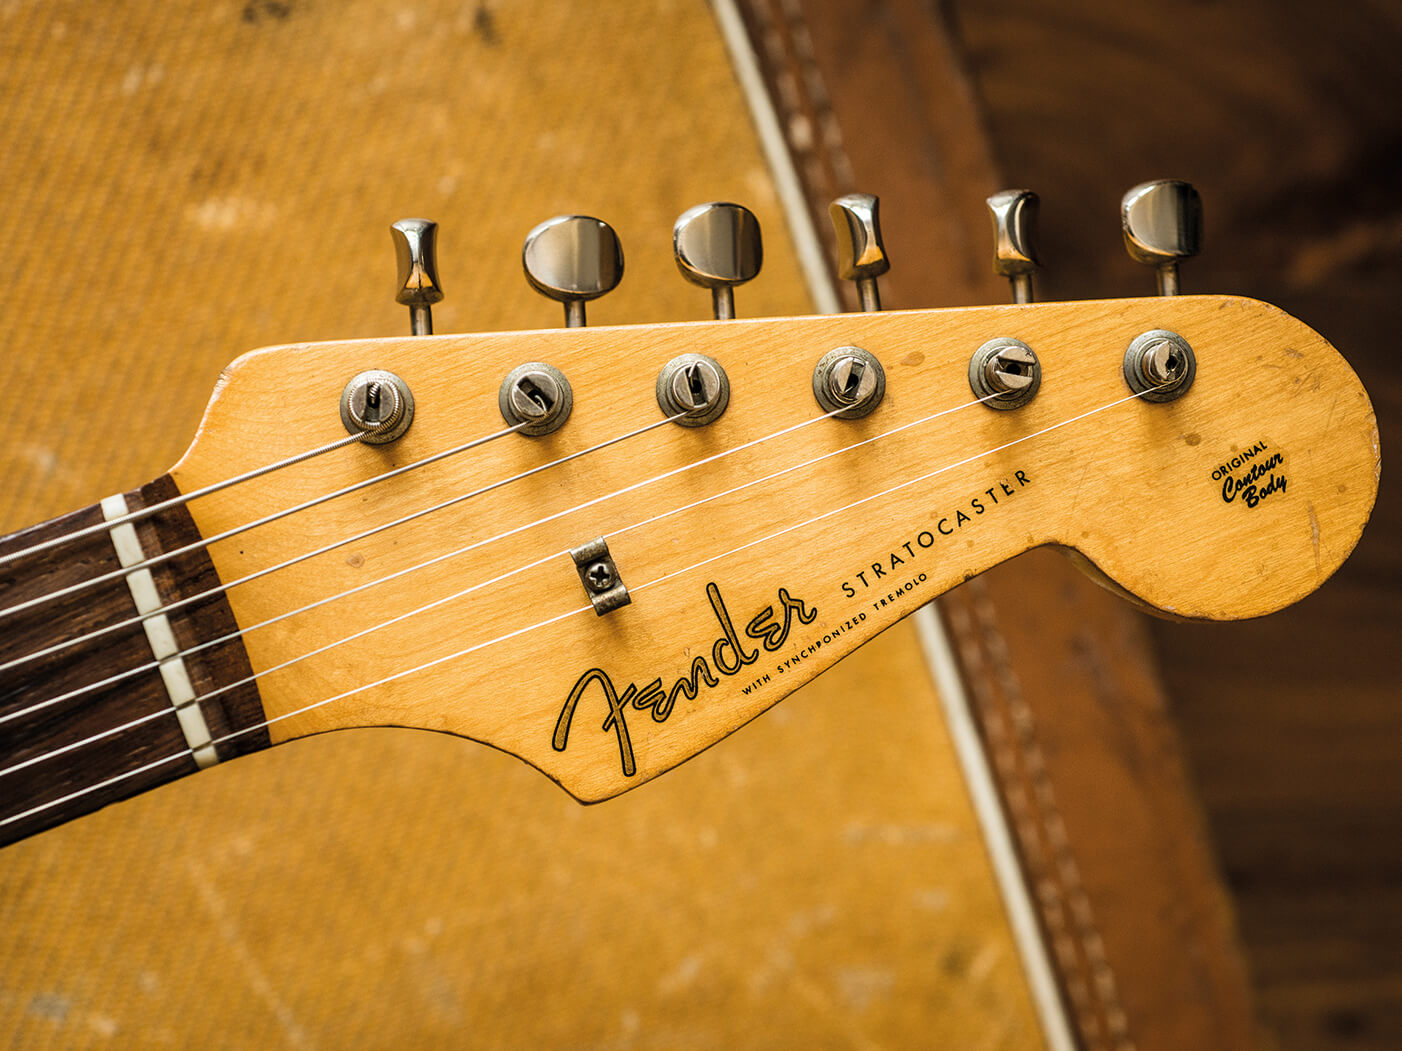 fender stratocaster guitars history